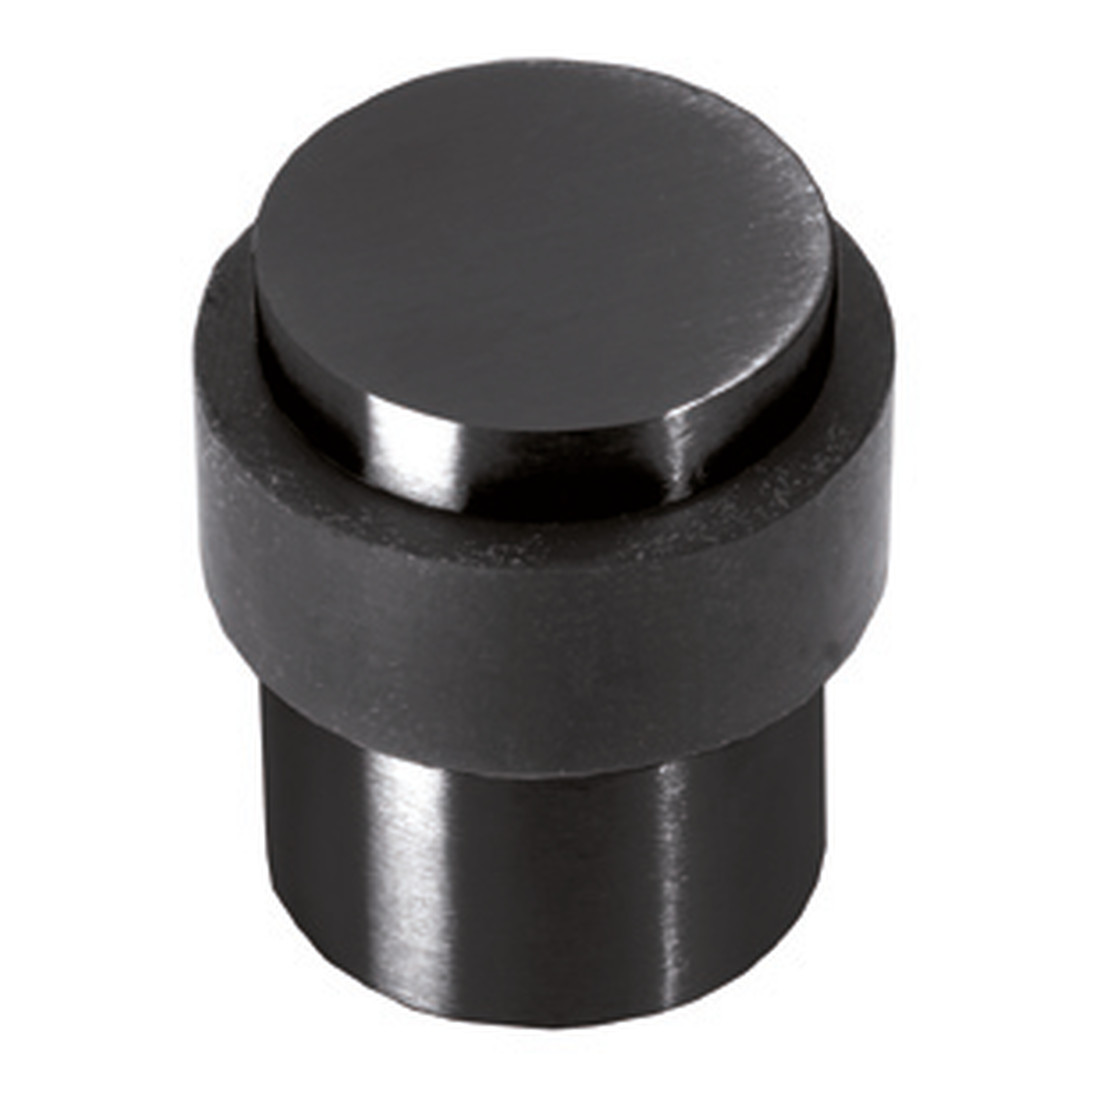 Door stopper black floor mount D 29mm universal screw